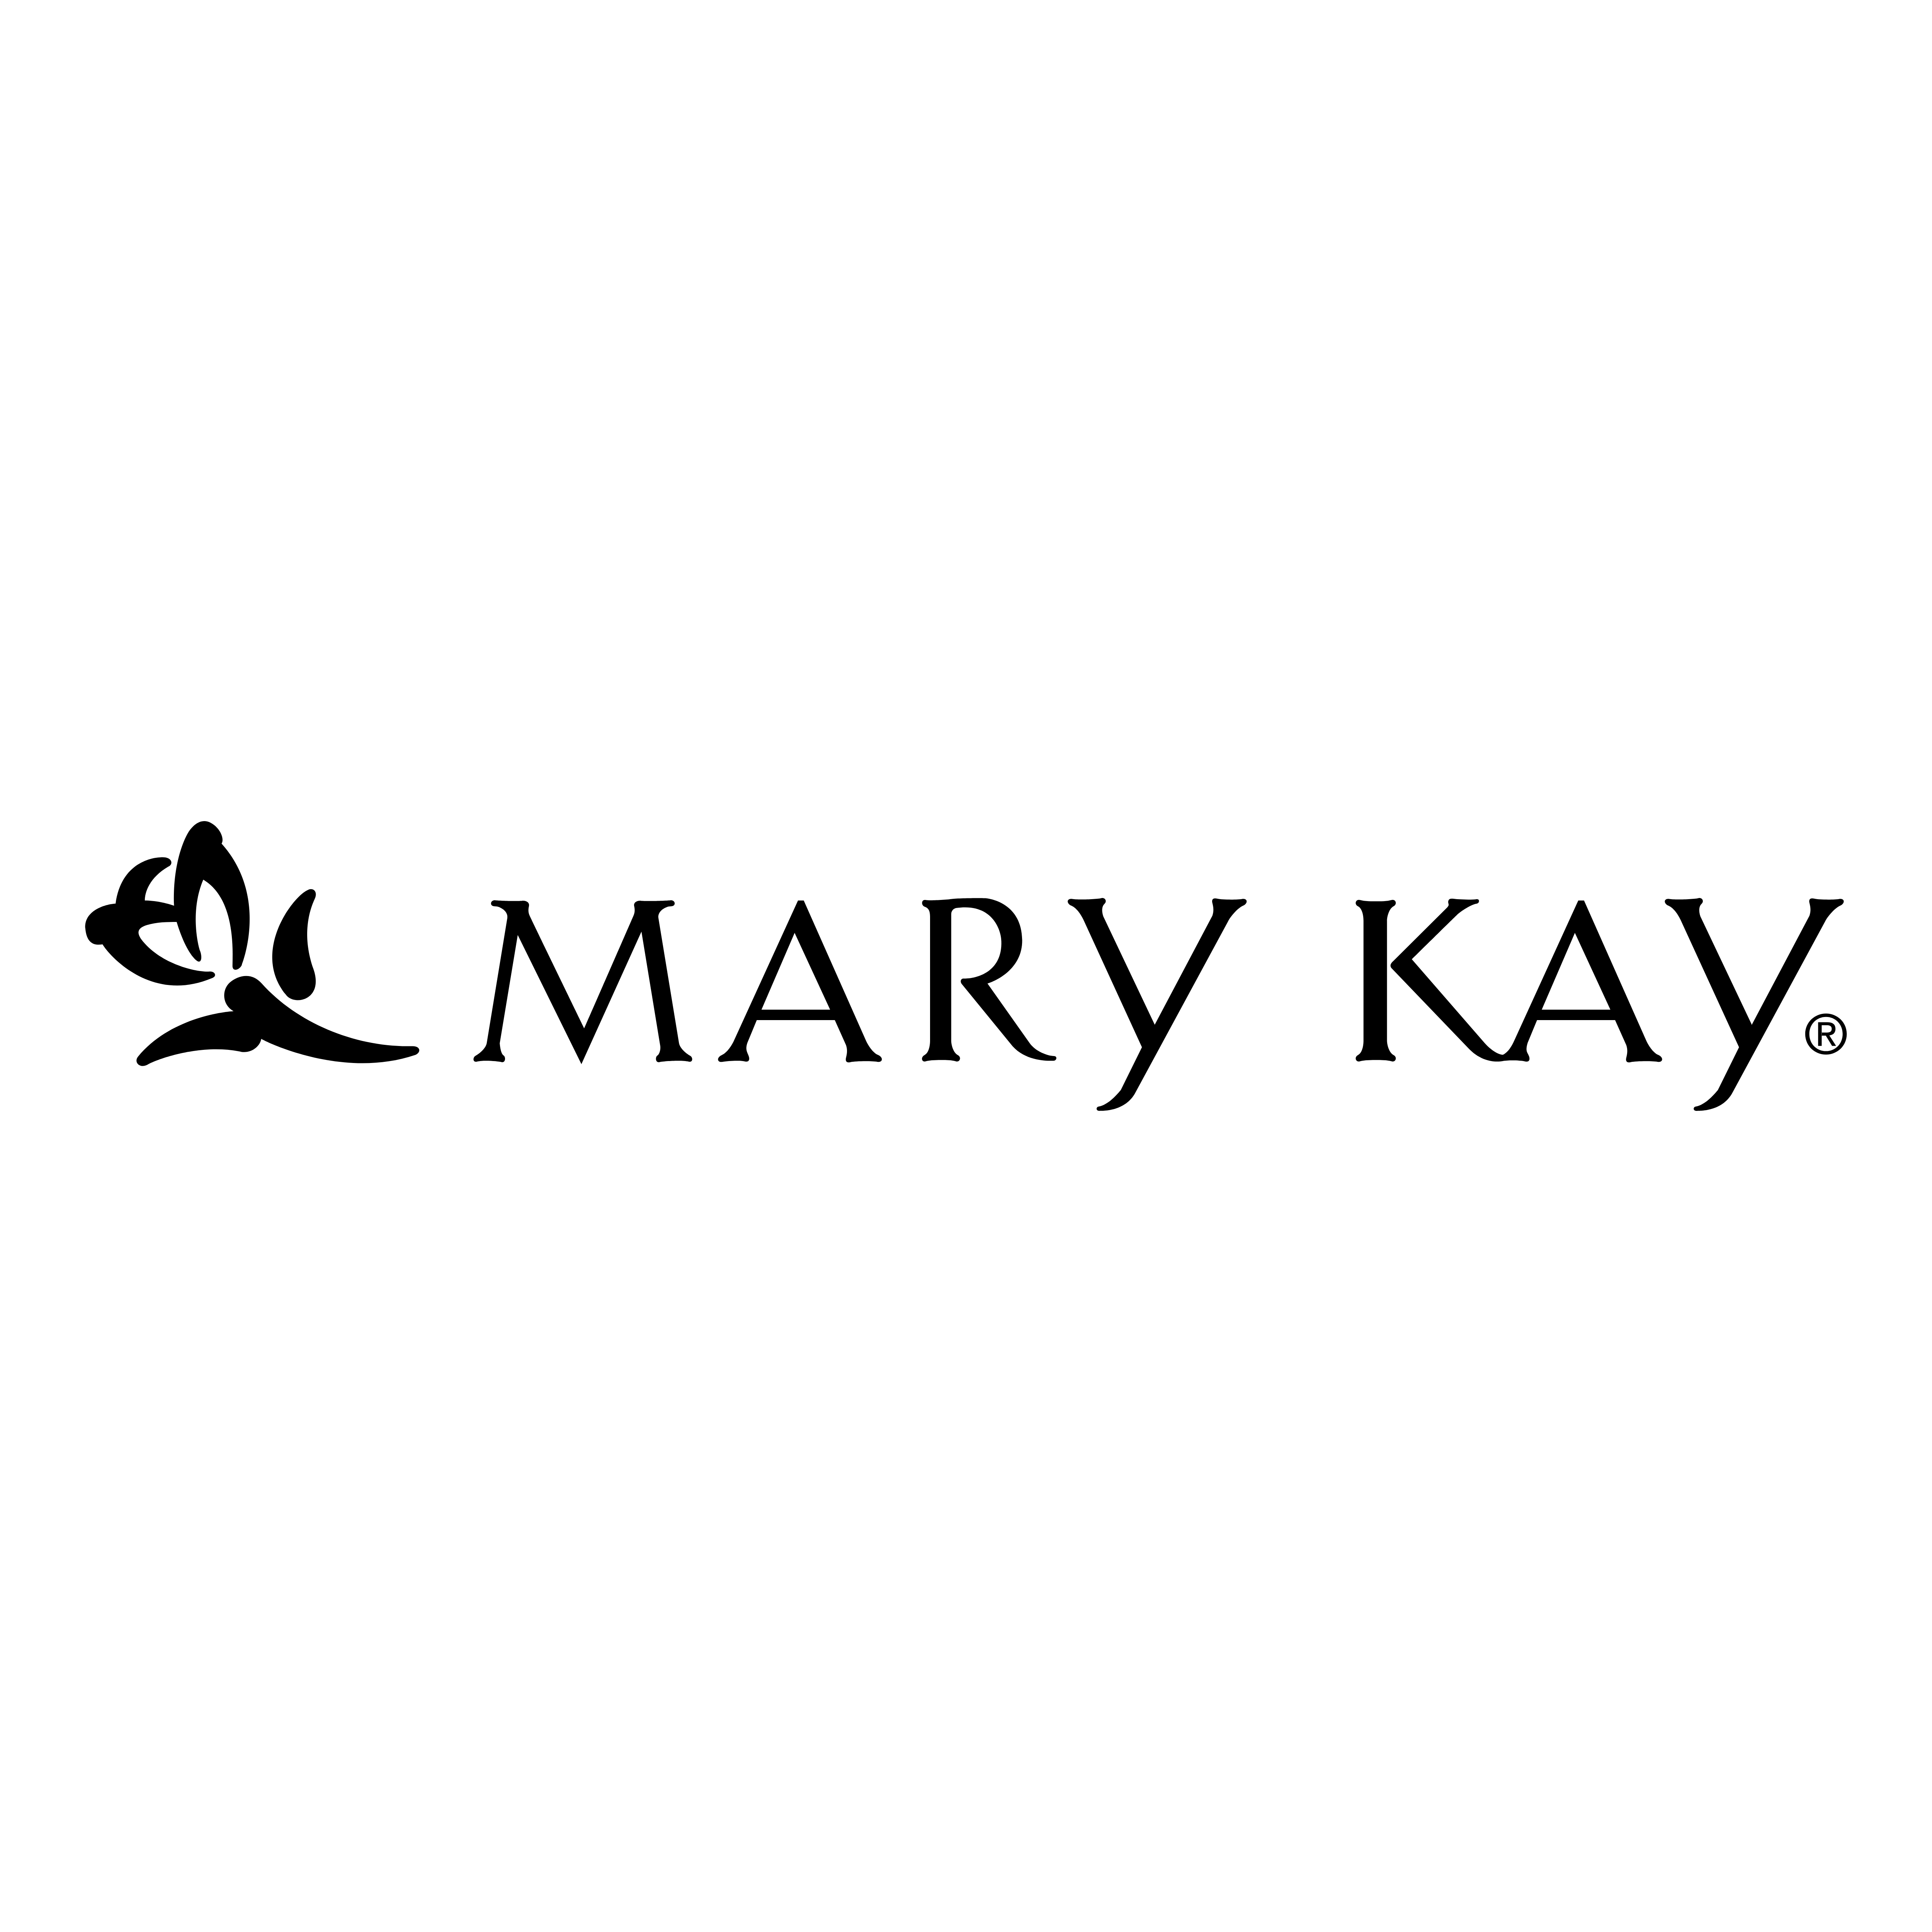 Mary Kay Logos Download